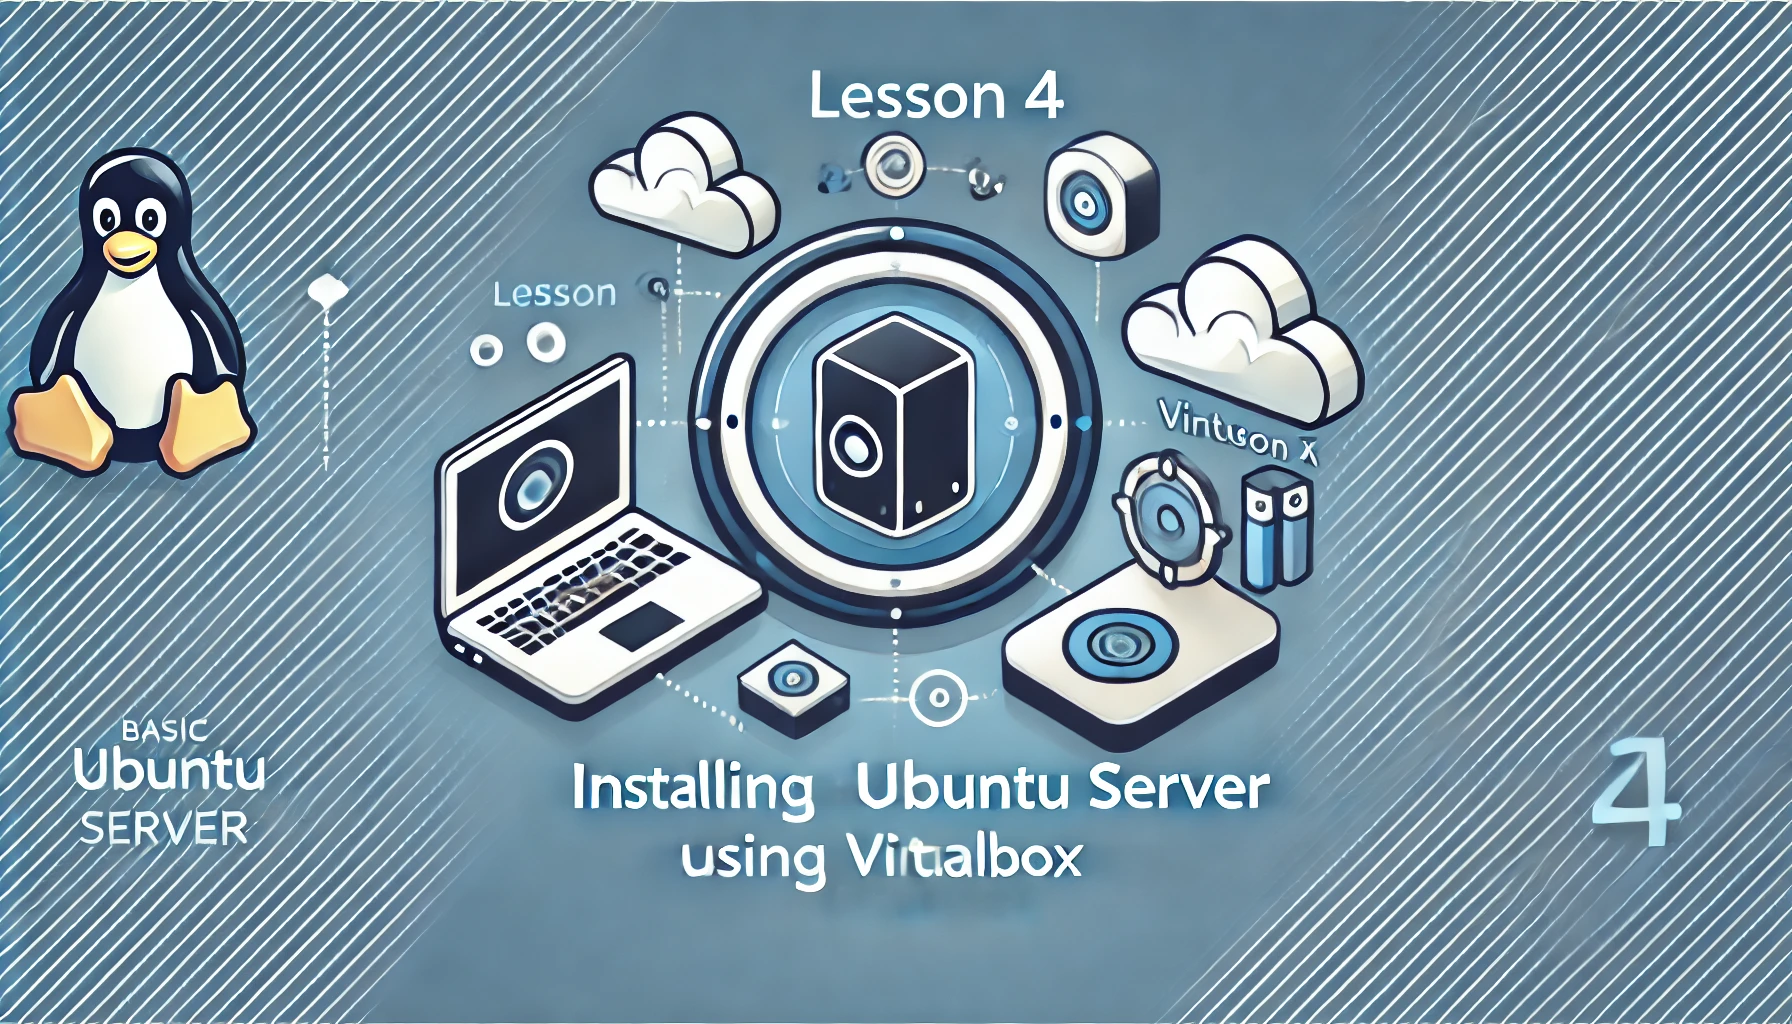 Lesson 4 - Cài Đặt Ubuntu Server trên VirtualBox